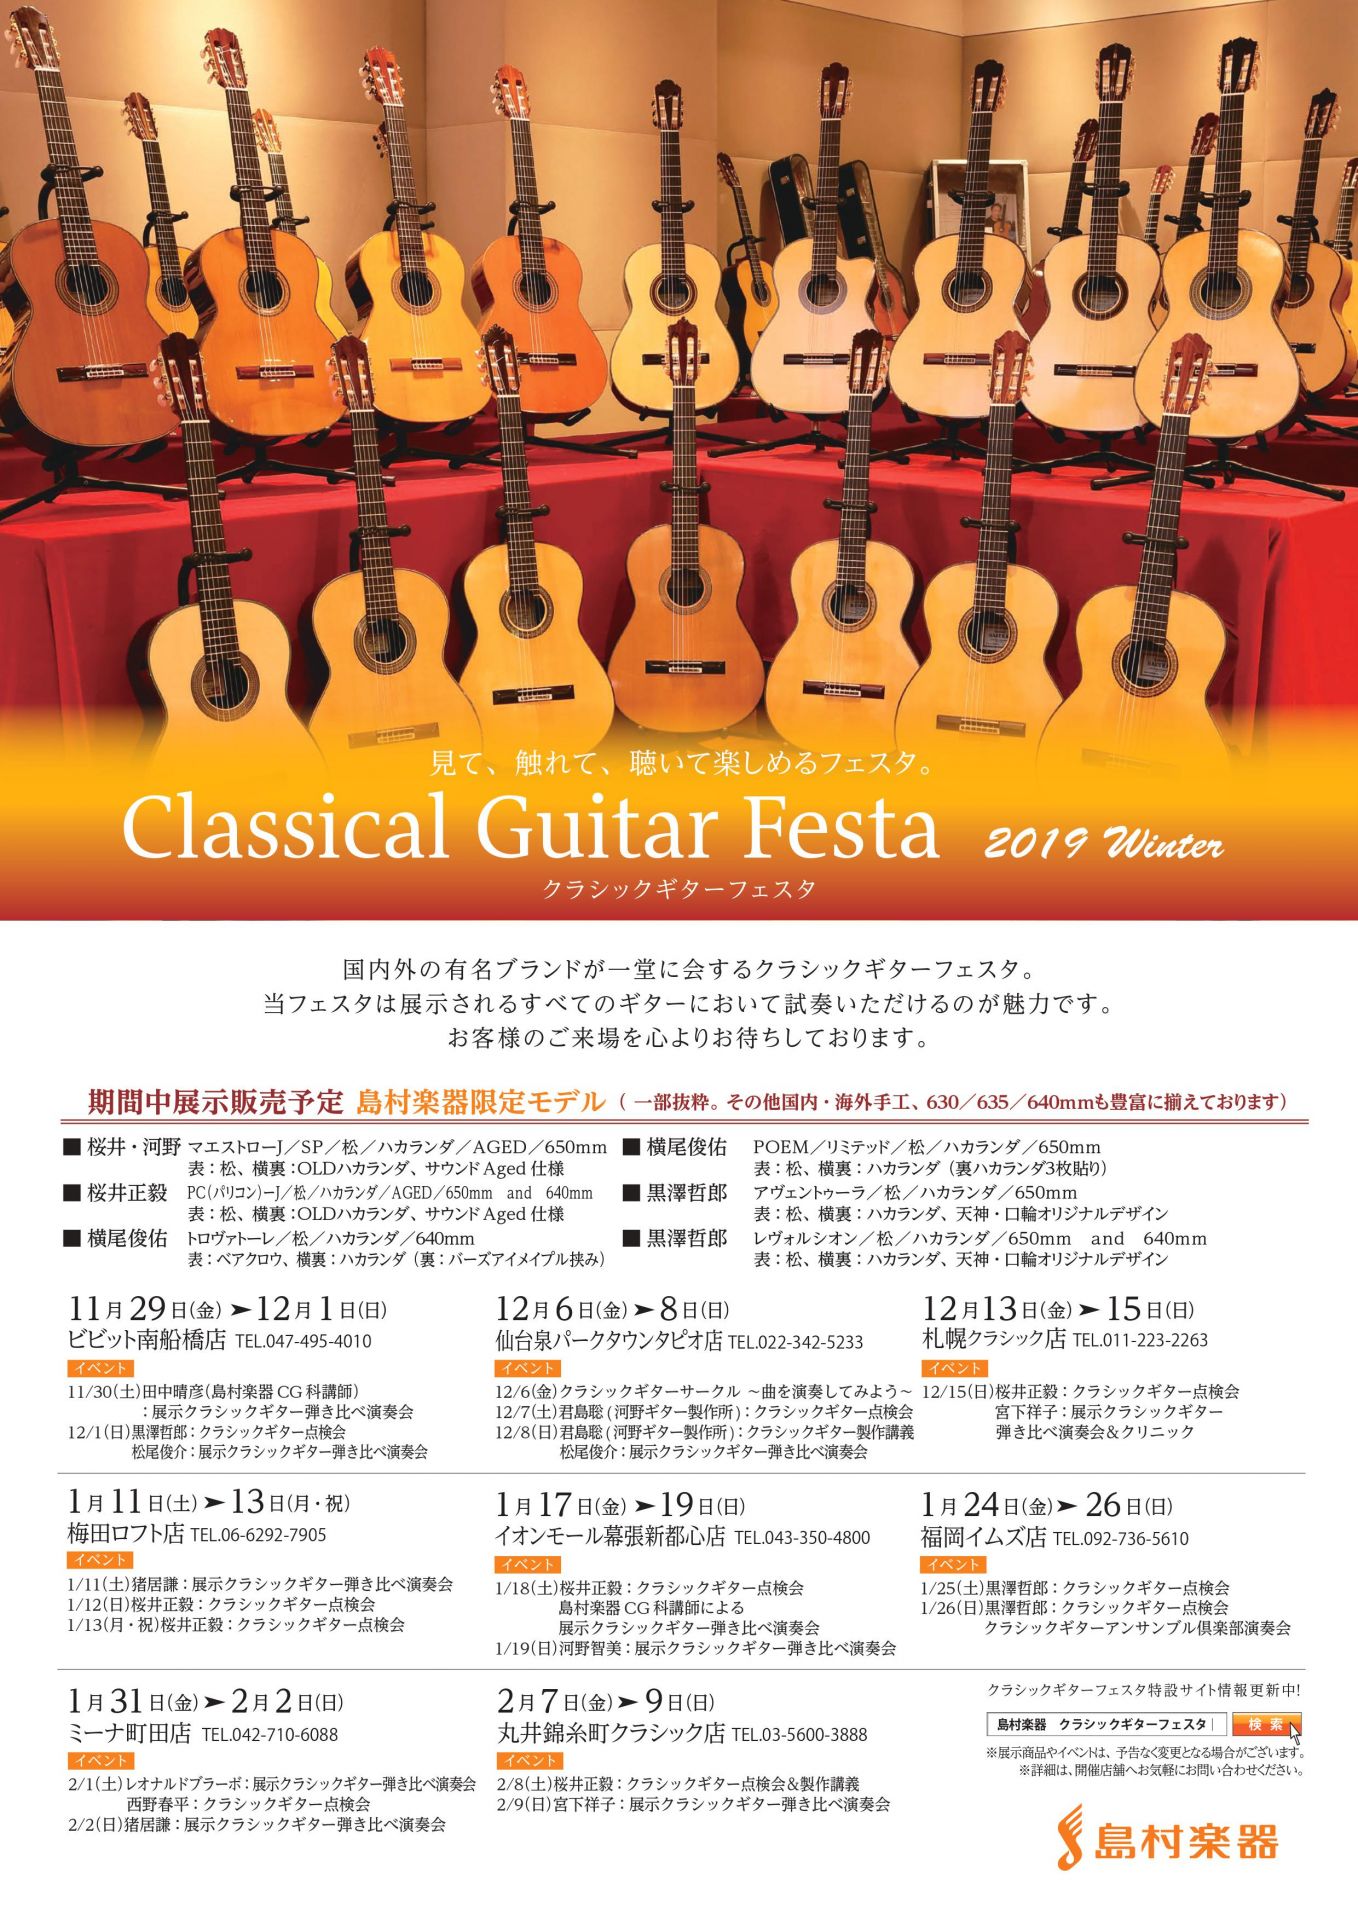 *「クラシックギターフェスタ 2019Winter」開催しております。 2019/12/06(金)〜12/08(日)の3日間、仙台泉パークタウンタピオ店にて、クラシックギターフェスタを開催しております。 今年は例年に比べ、開催時期が年始から年末に変更となっております。 開催までもうあまり時間がありま […]